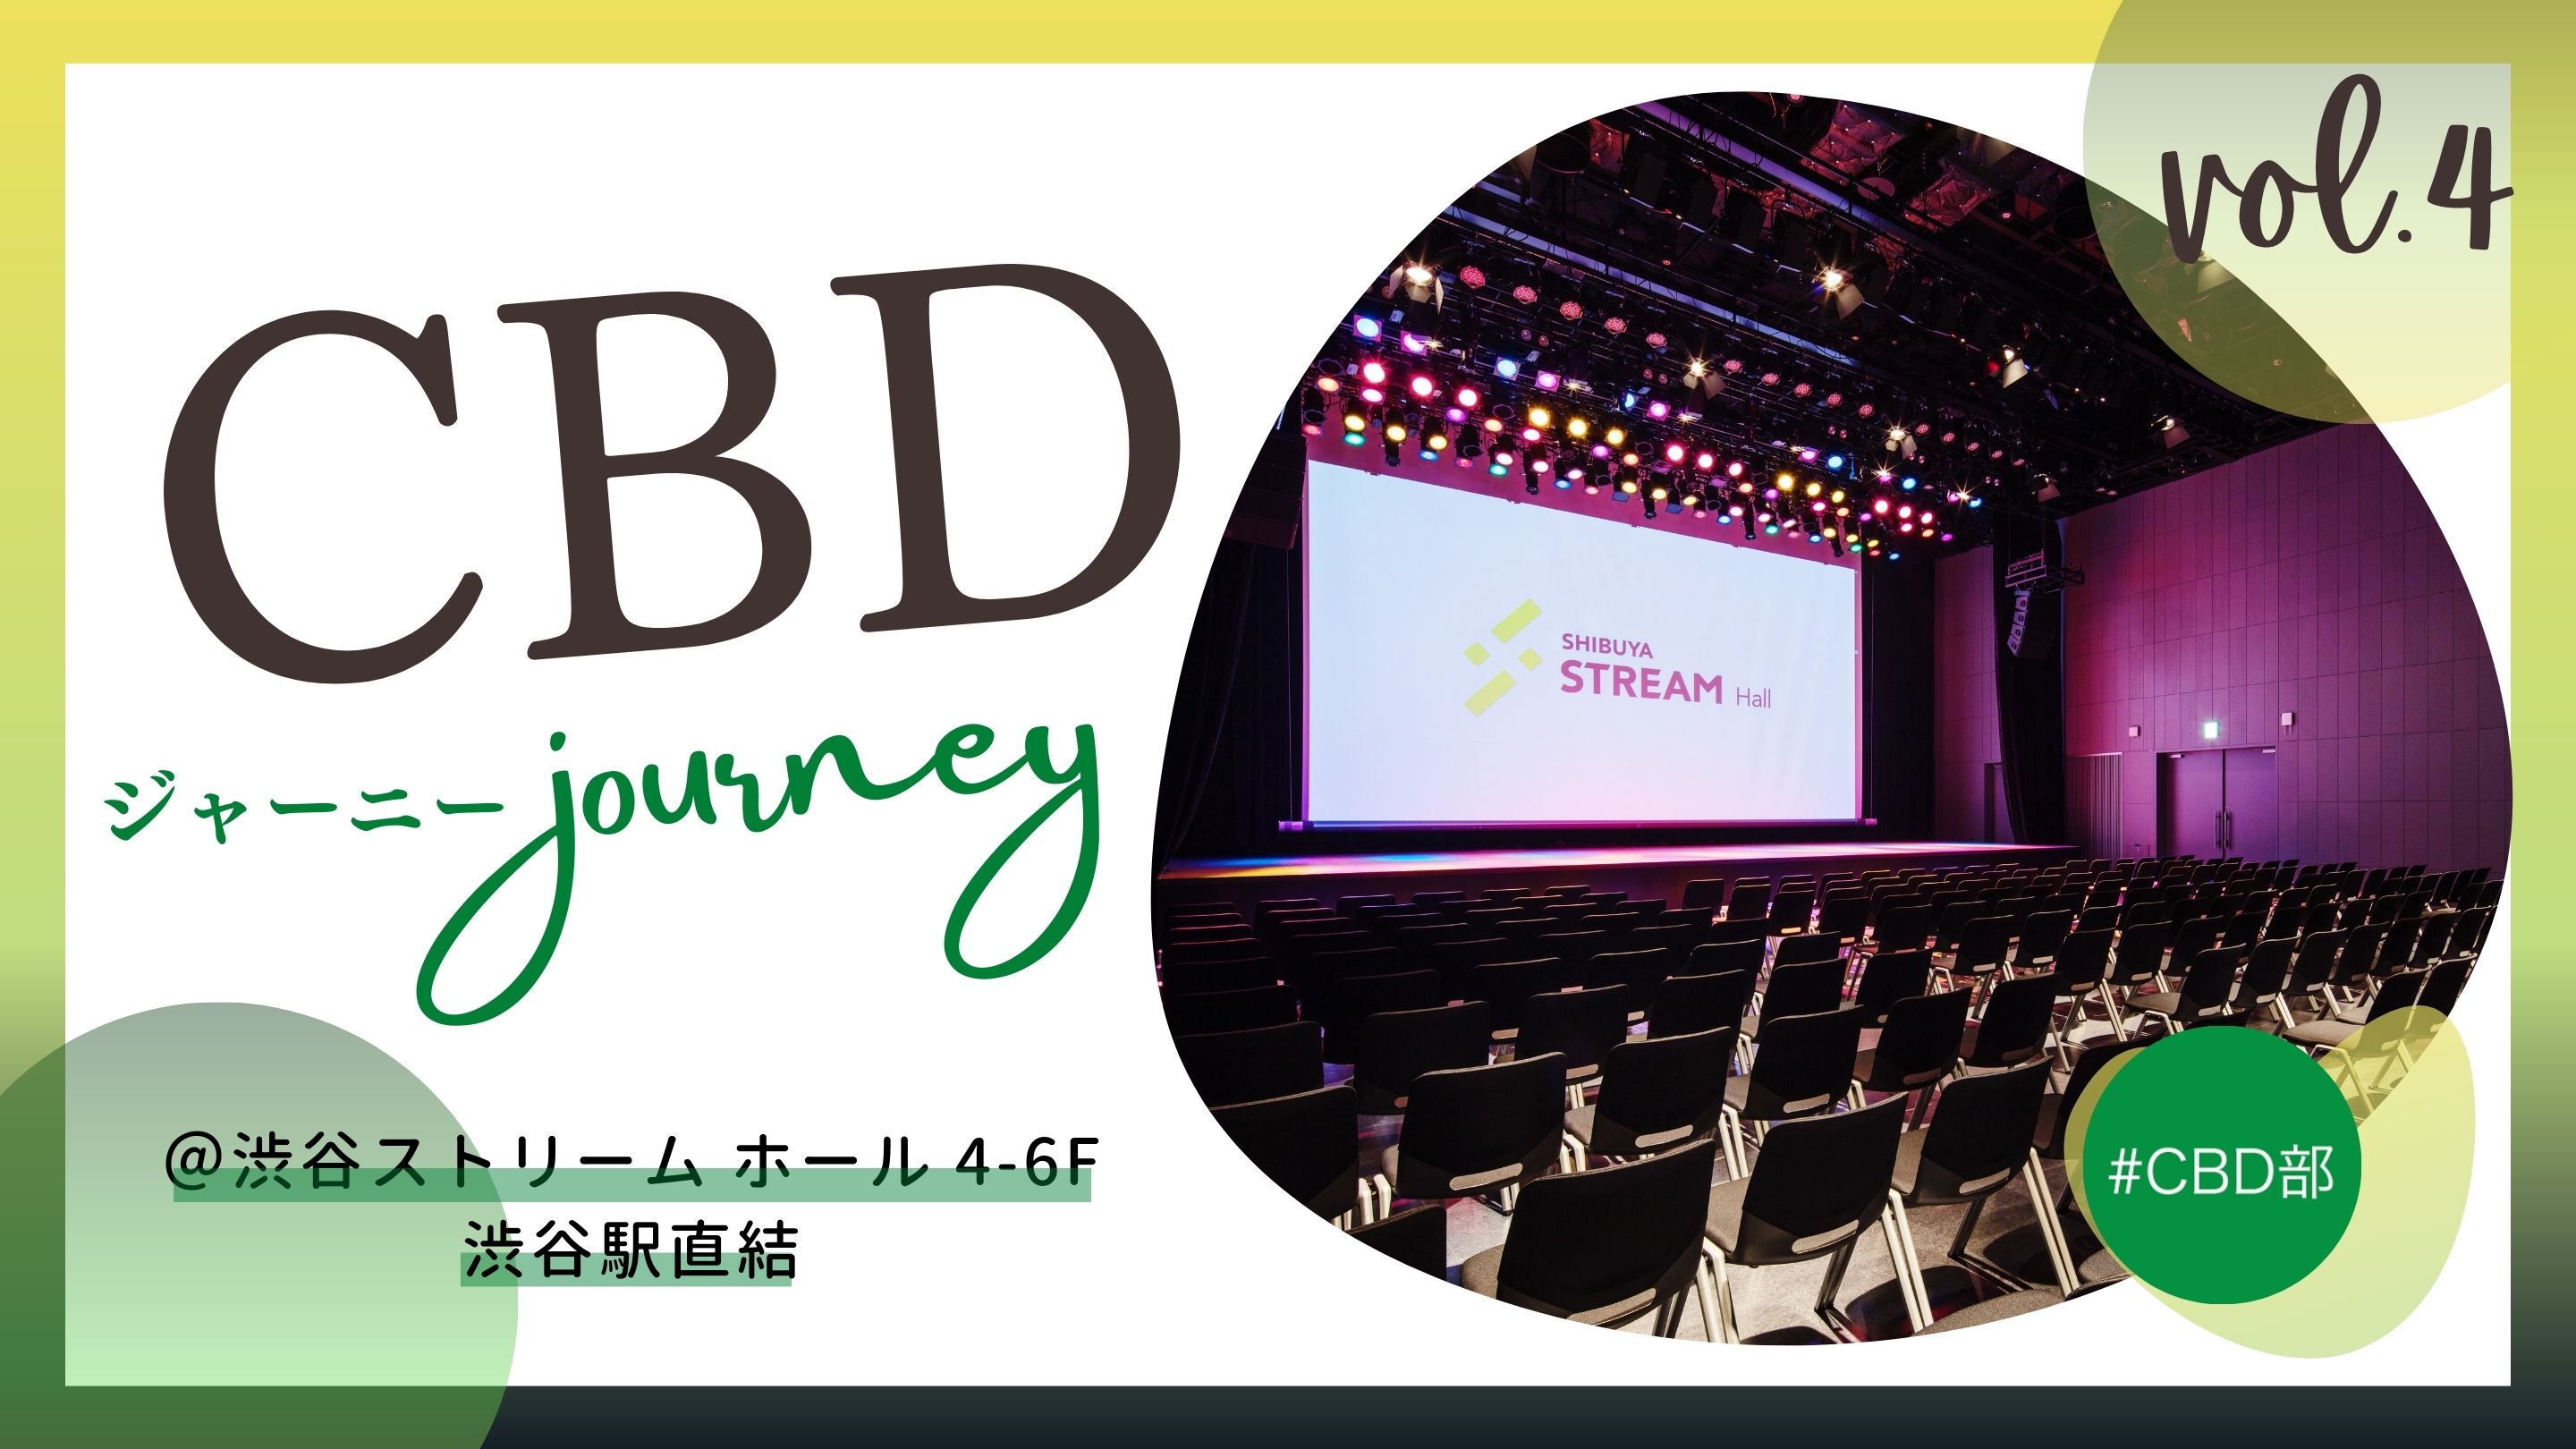 【ショップニュース】CBD Journey Vol.4出店について（事業者様向け案内）